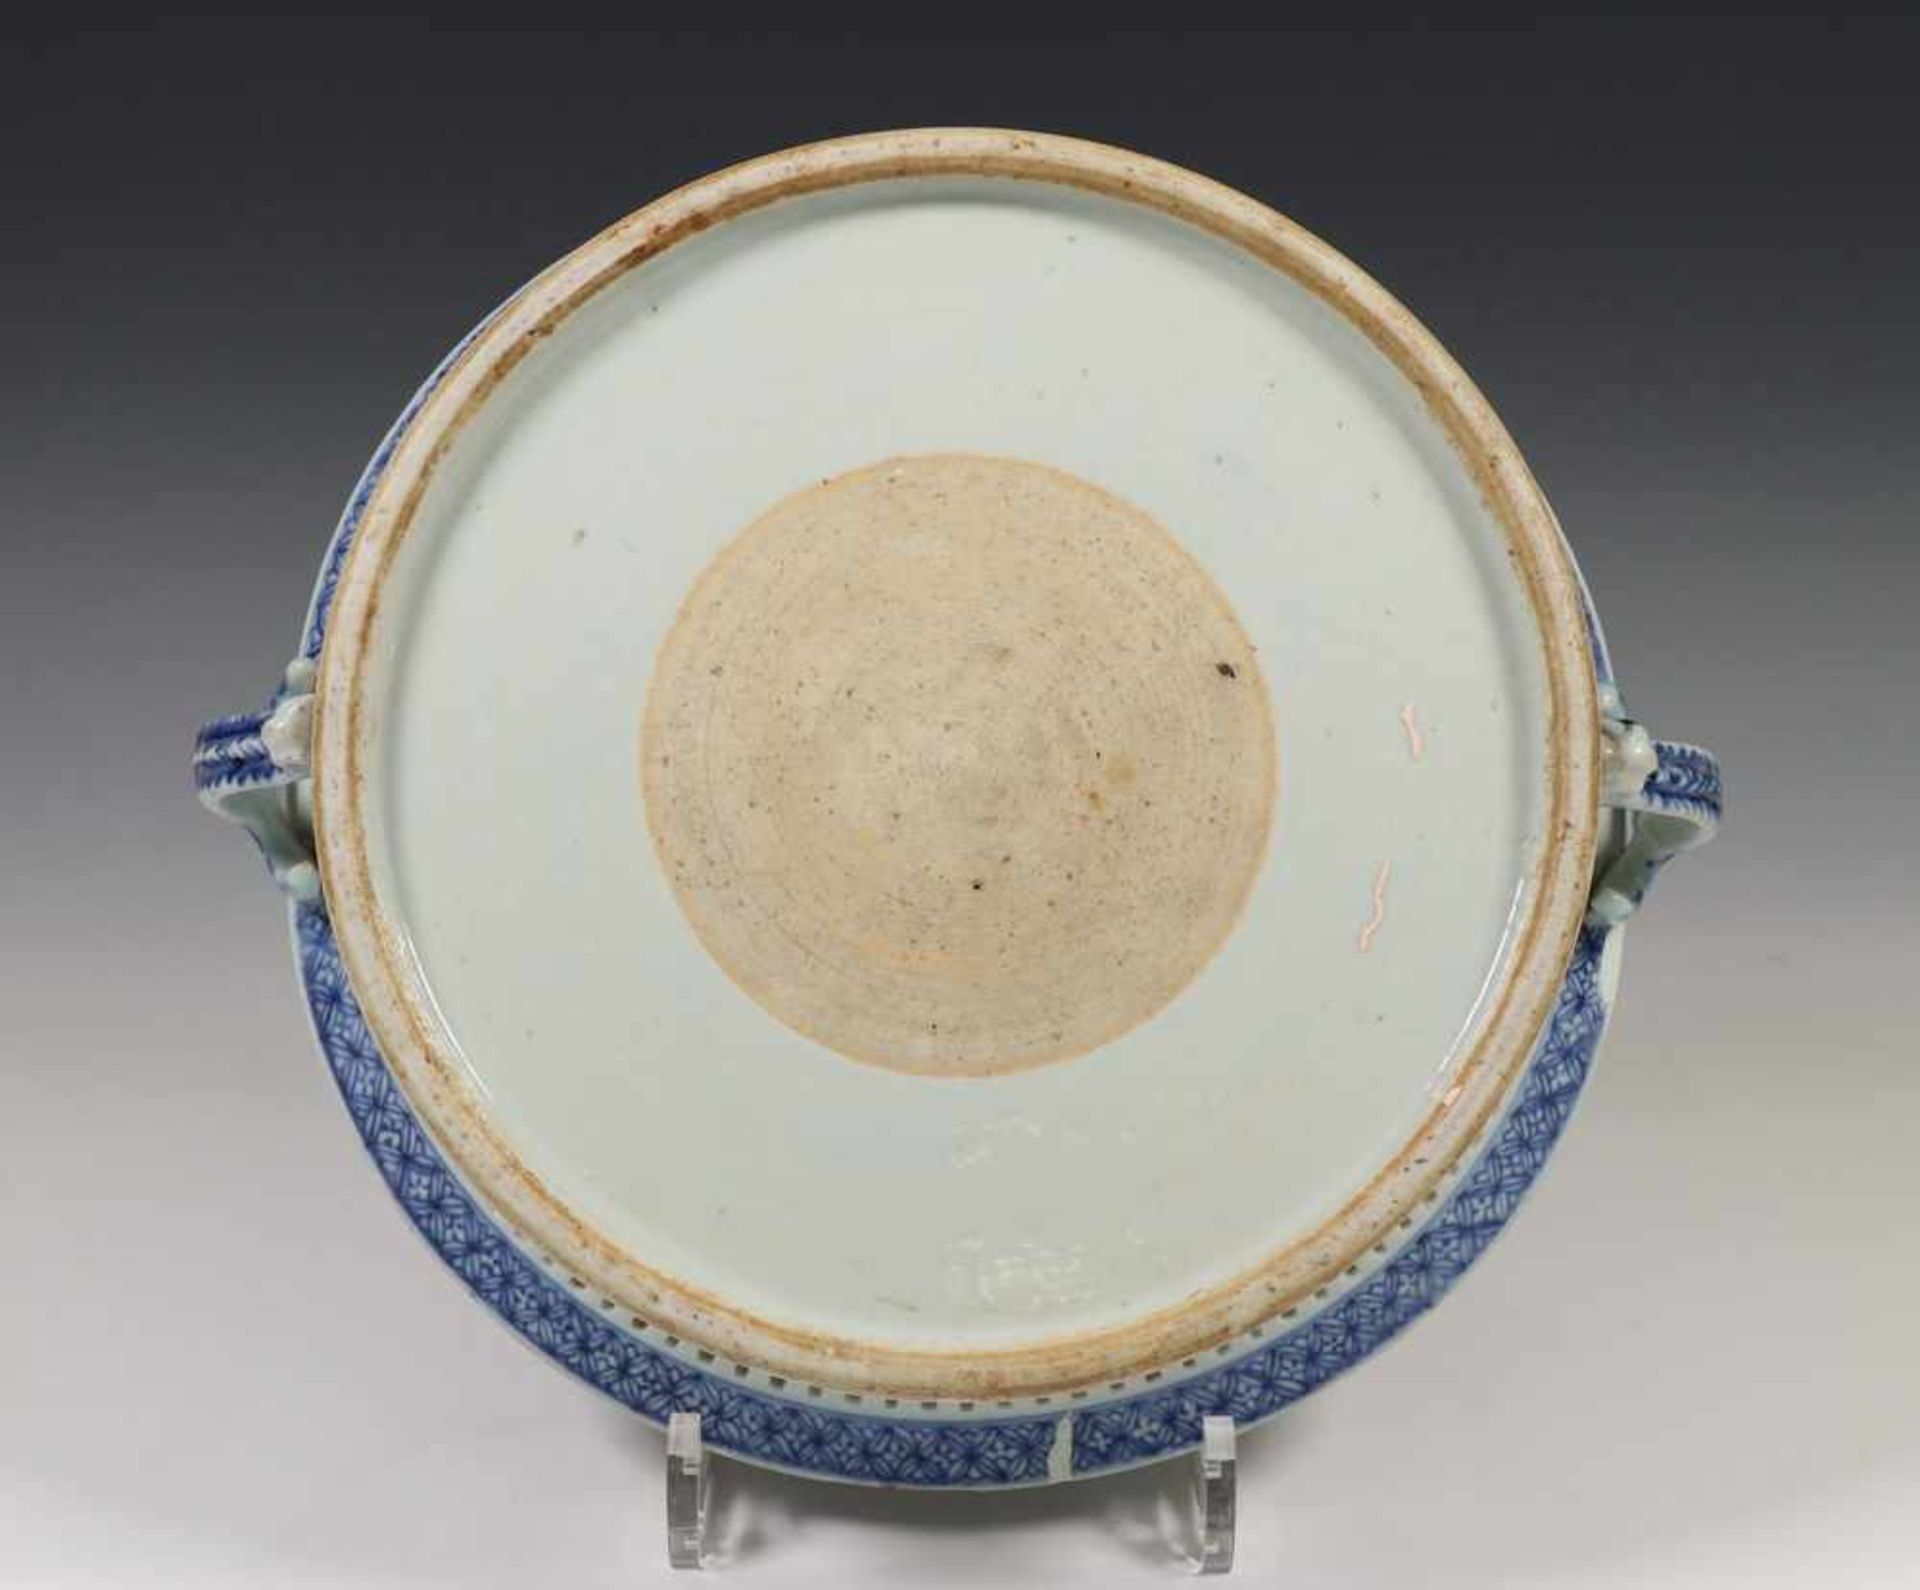 China, blauw-wit porseleinen mandvormige schaal, Qianlong,met gebogen ajour rand en twee oren, het - Bild 3 aus 4